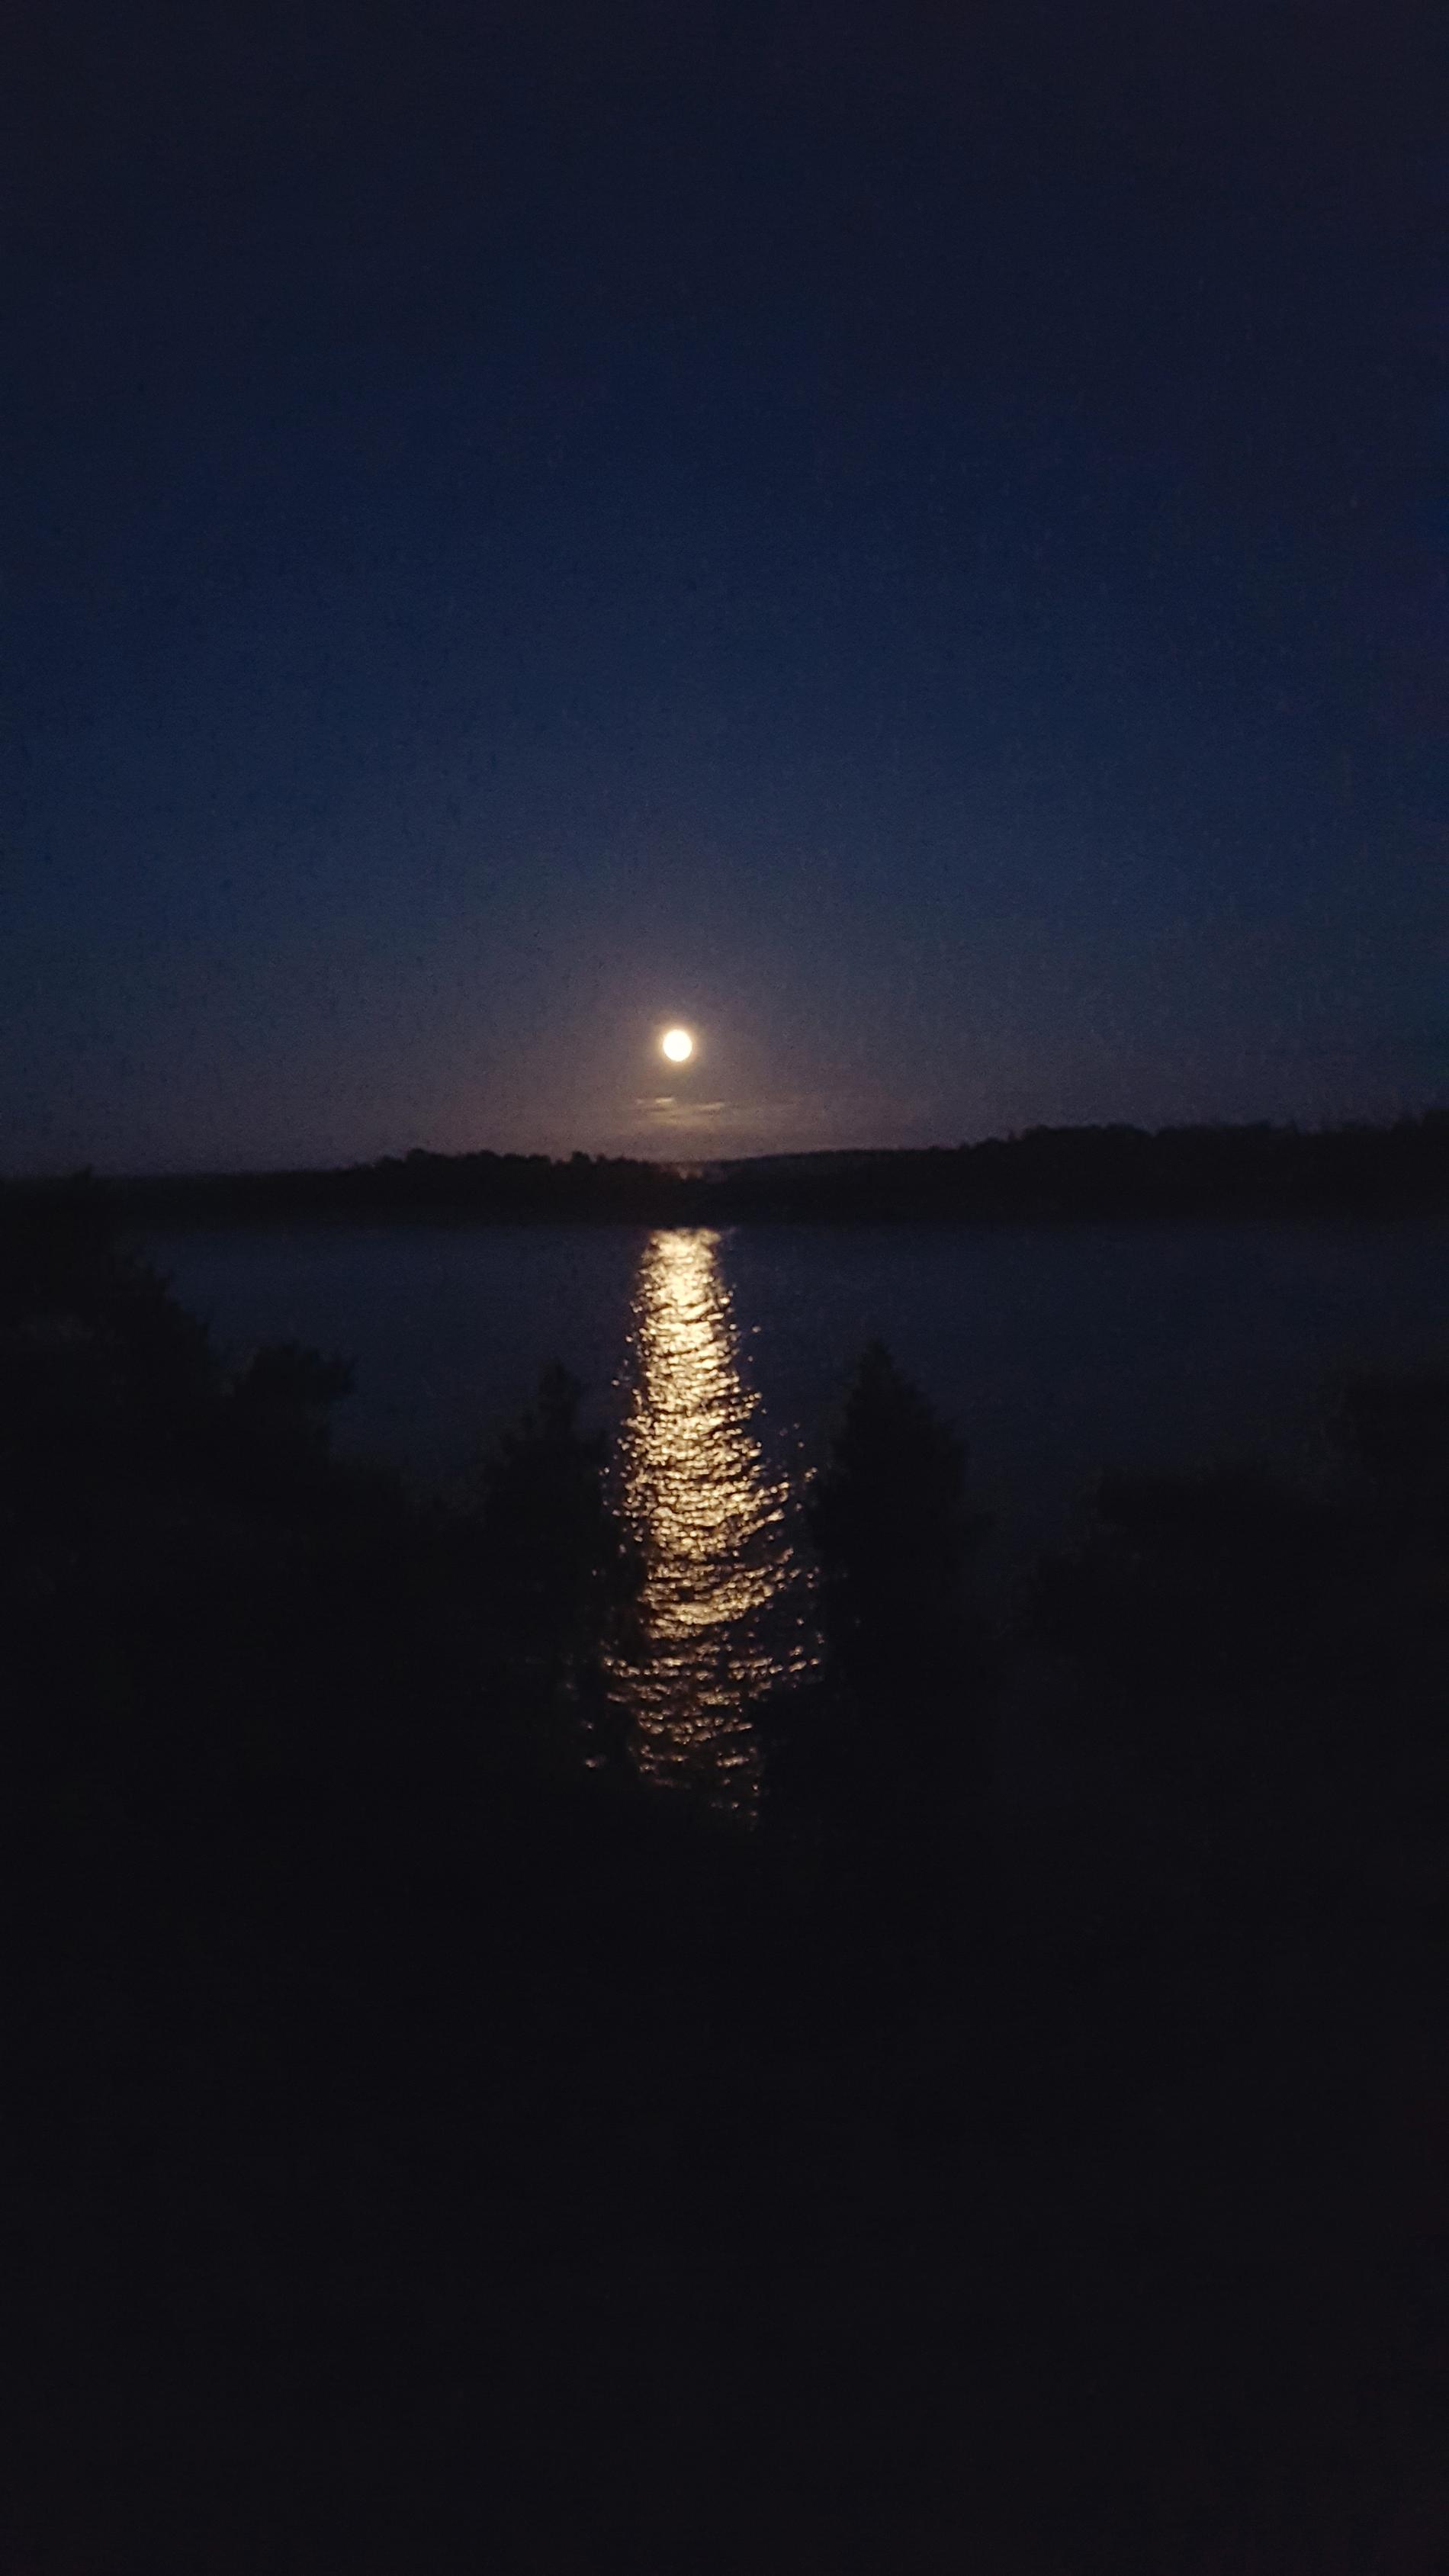 En läsare har skickat in den här bilden på månen över en sjö.